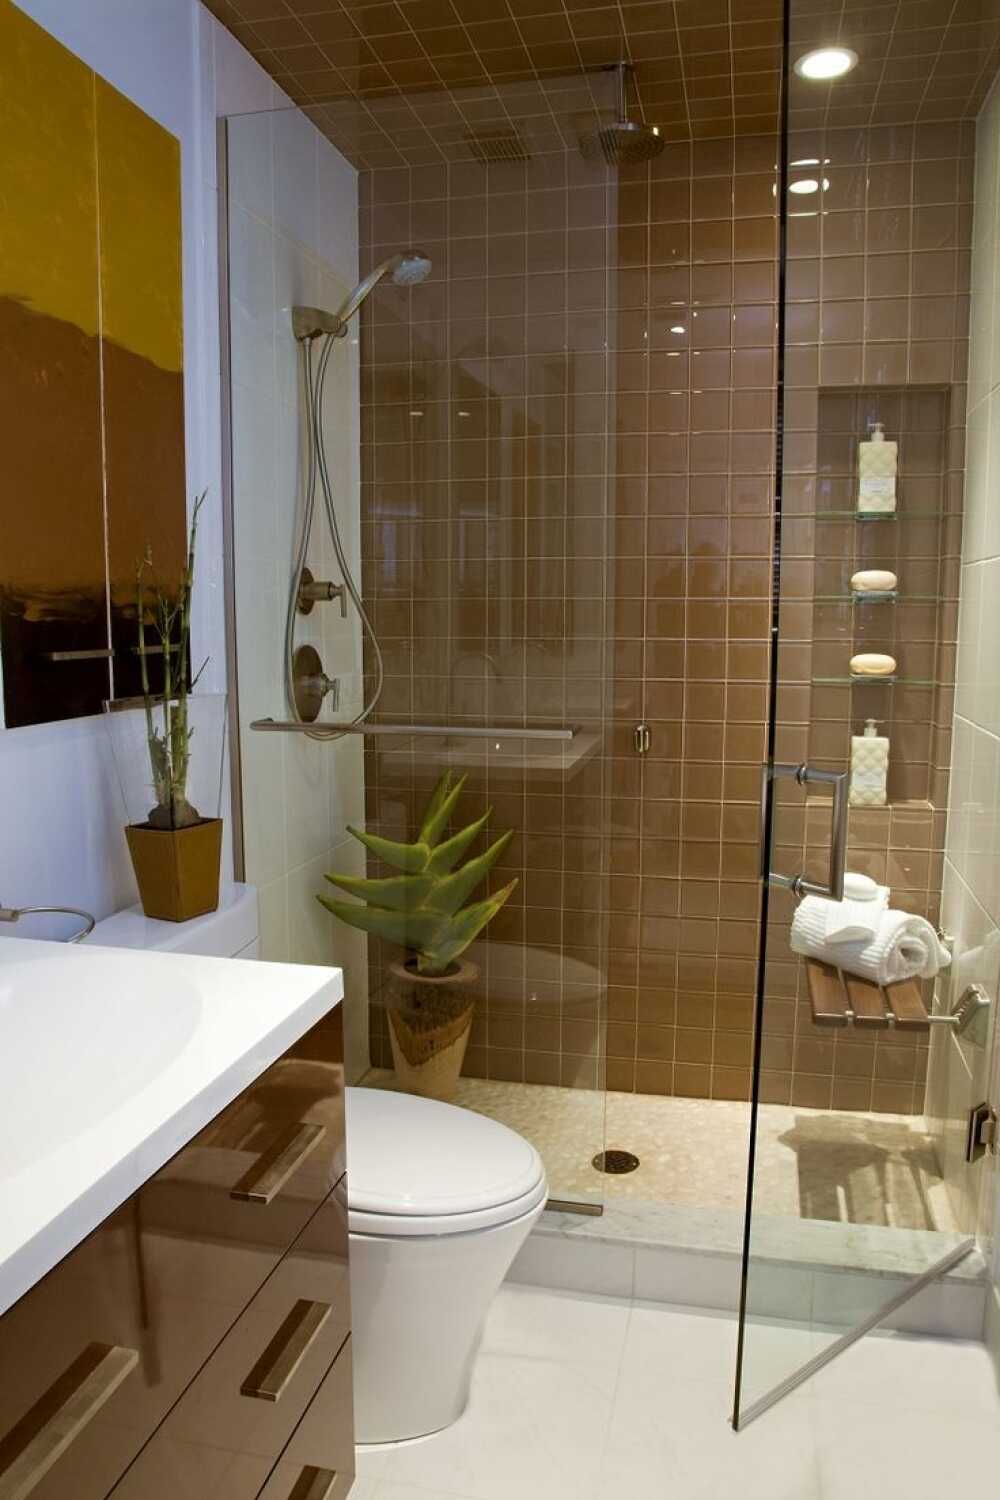 Thiết kế phòng tắm 6m2 trở thành xu hướng tại năm 2024 với những ý tưởng sáng tạo và tối ưu không gian. Tùy thuộc vào nhu cầu sử dụng, phòng tắm có thể được bố trí với các kiểu bàn rửa mặt, bồn tắm hoặc vách ngăn thông minh để tiết kiệm diện tích. Hãy để chúng tôi giúp bạn biến căn phòng tắm của mình trở nên đẹp và tiện nghi hơn.